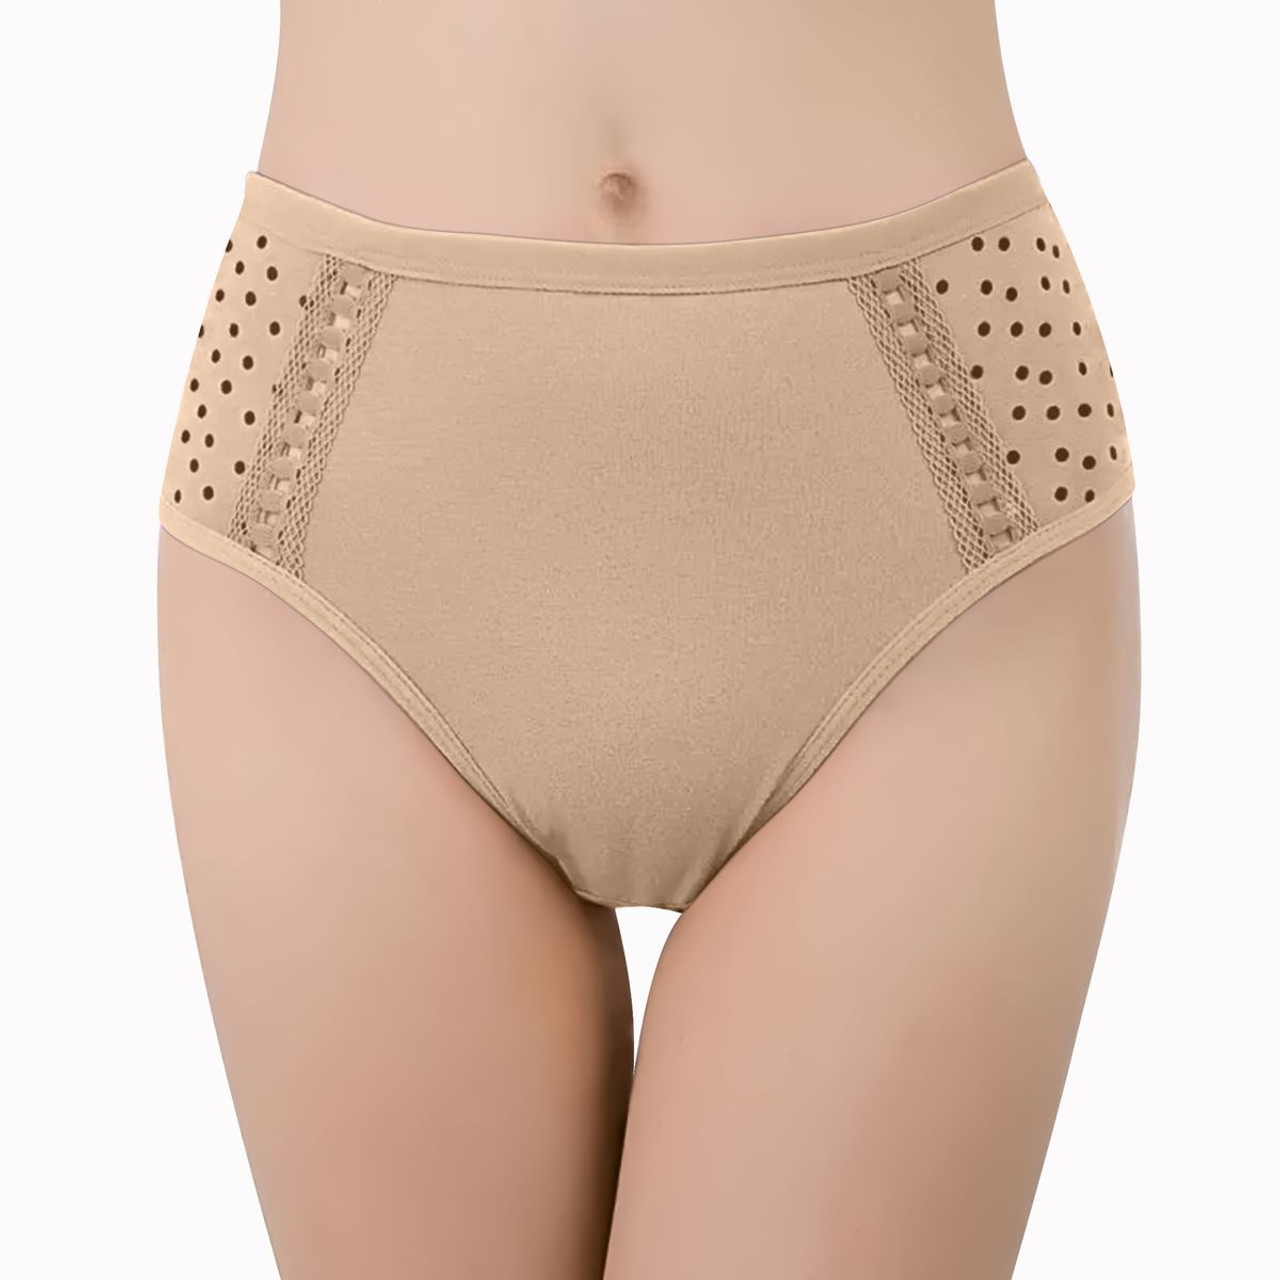 Women's Ultra-Soft Moisture-Wicking Cotton Underwear (6-Pack) 